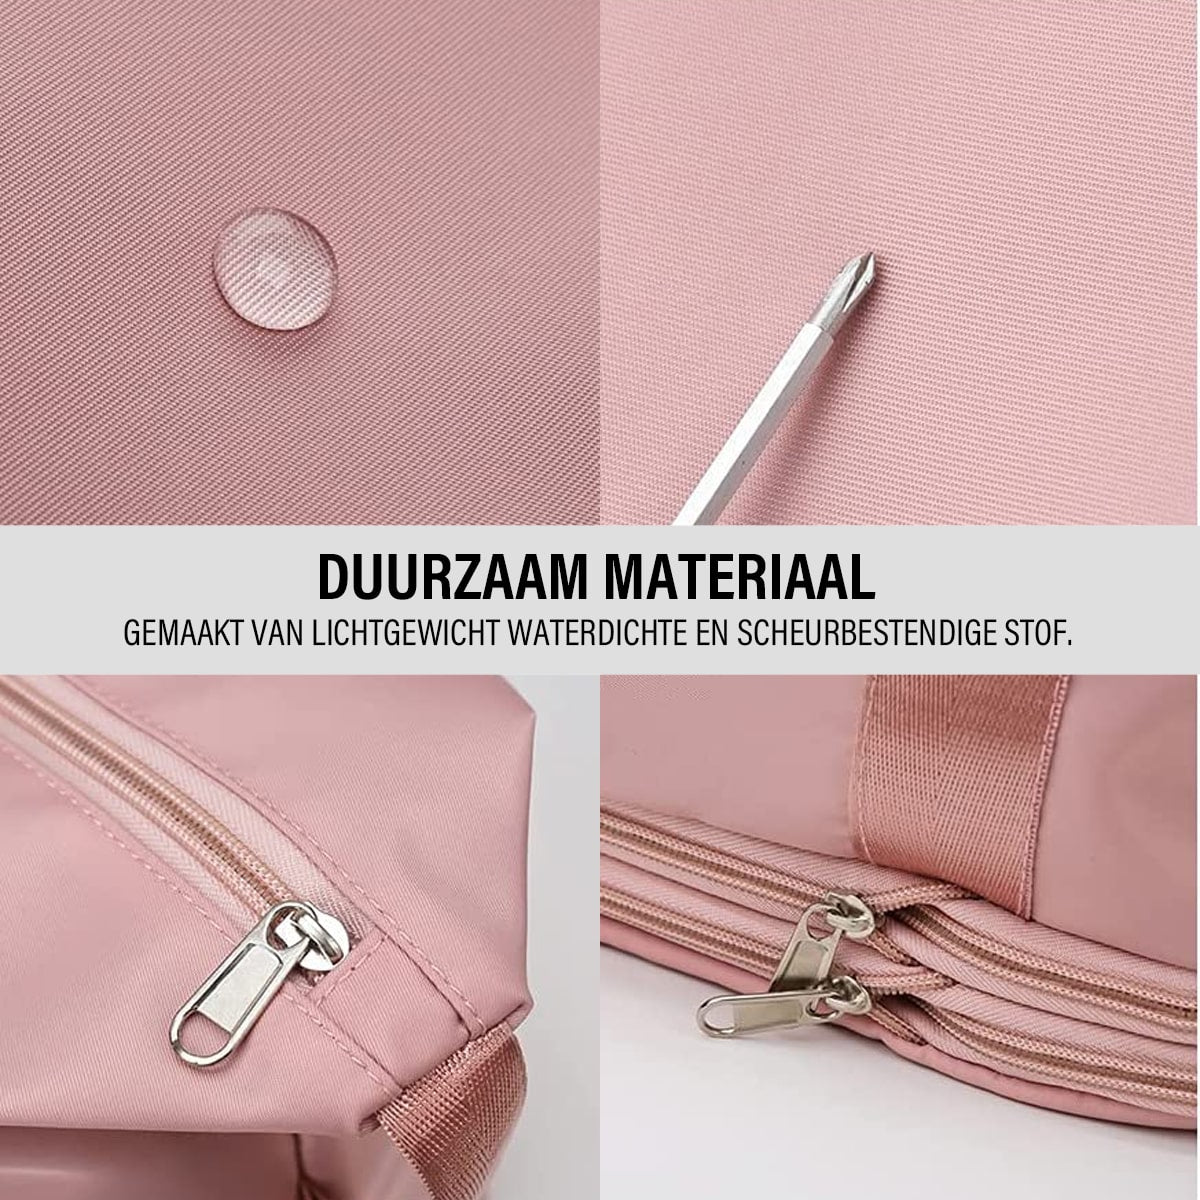 Afbeelding van het duurzaam materiaal gemaakt van lichtgewicht waterdichte en scheurbestendige stof in de kleur roze van de  Beggo reistas.